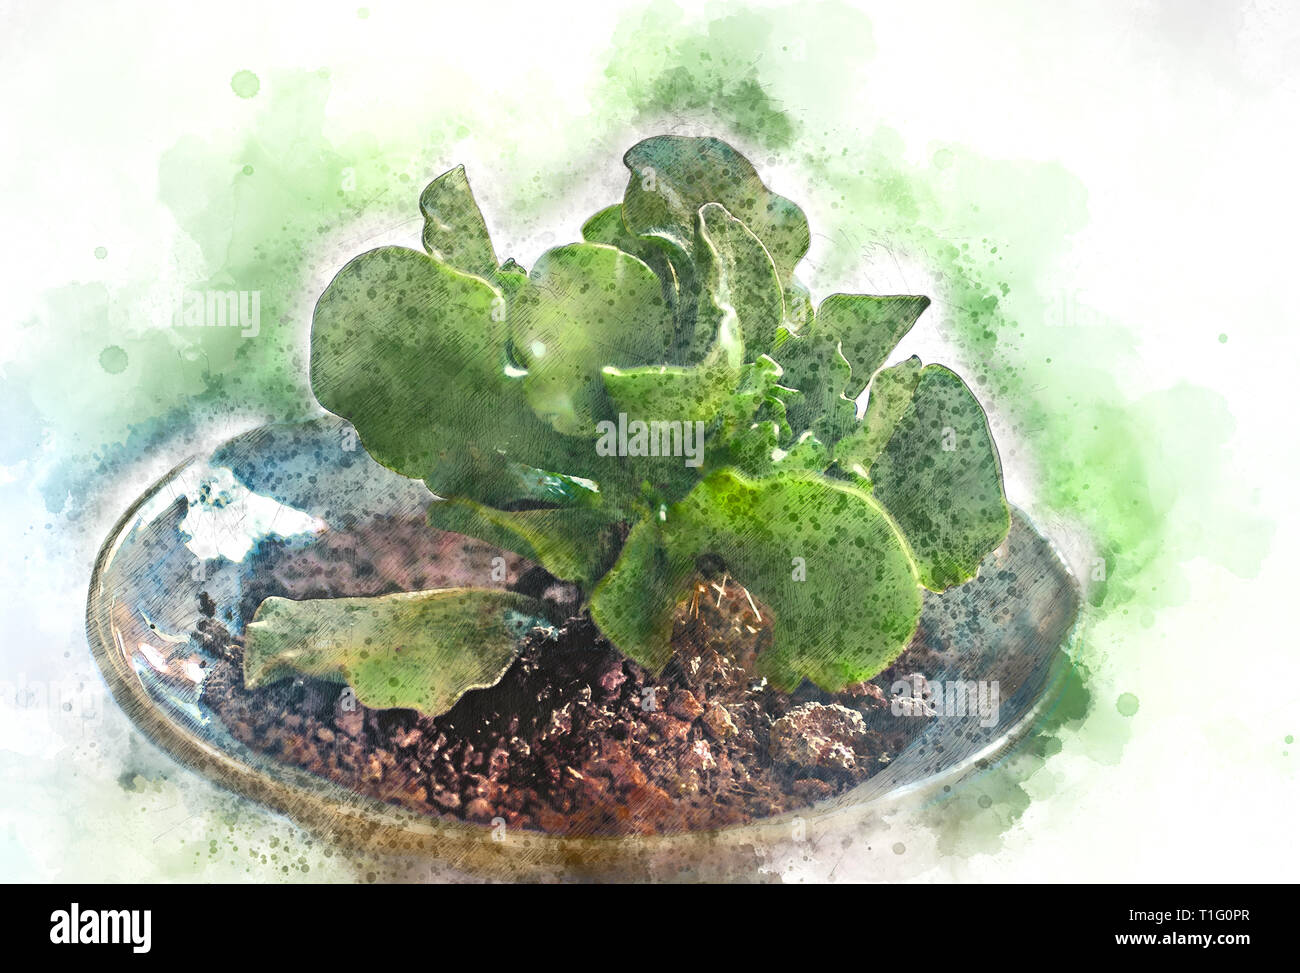 Migliorate digitalmente immagine di un potted Adromischus cristatus Foto Stock